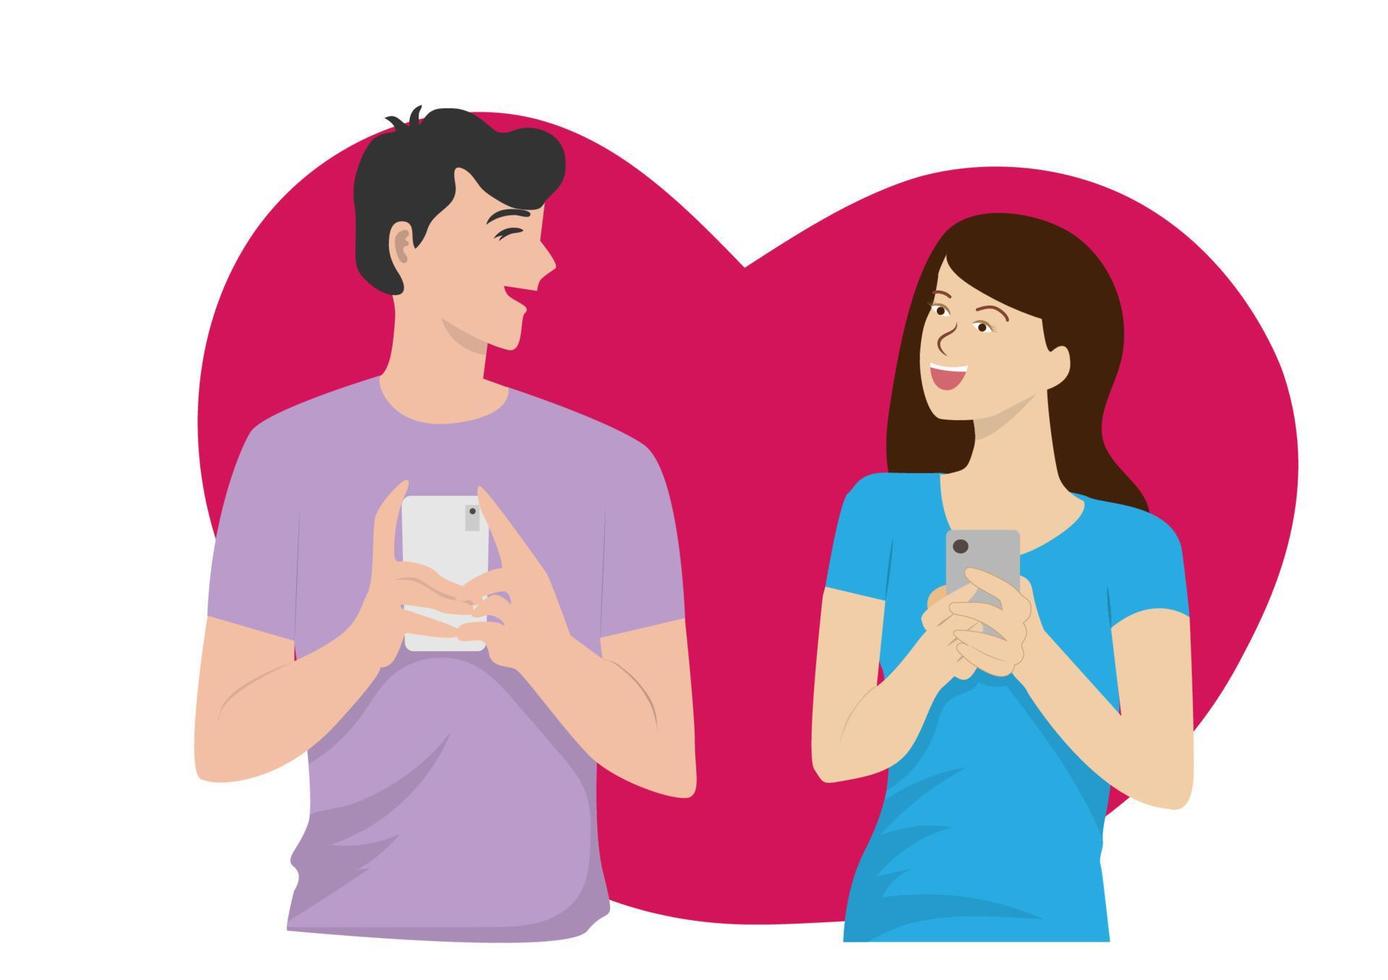 mannelijke en vrouwelijke personages chatten vrolijk met wat er op hun smartphones wordt weergegeven. vector